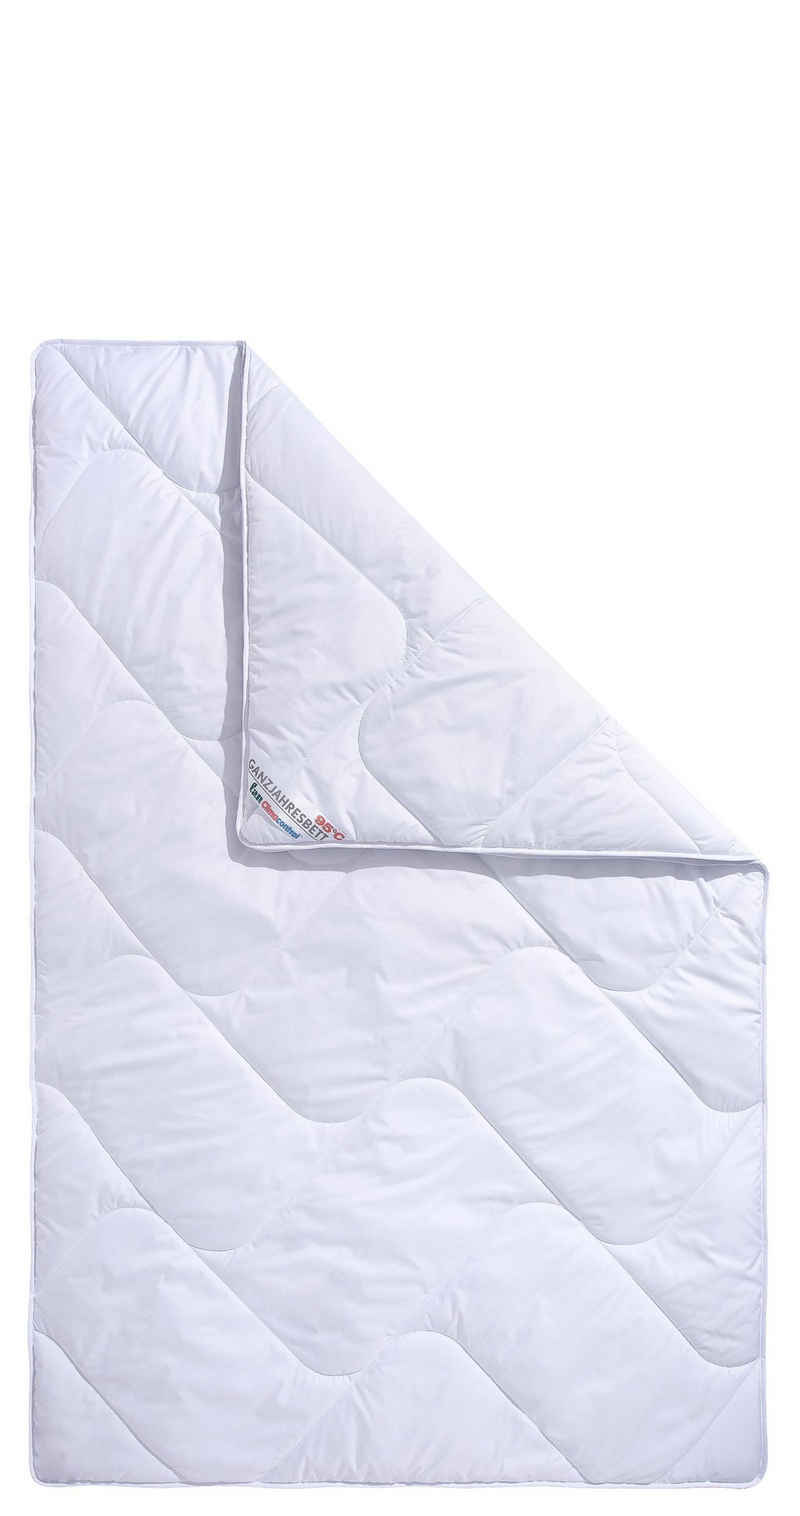 Microfaserbettdecke, Climacontrol® II m. Baumwollbezug, f.a.n. Schlafkomfort, Bezug: 100% Baumwolle, Bettdecke in 135x200 cm und weiteren Größen, für den Winter geeignet